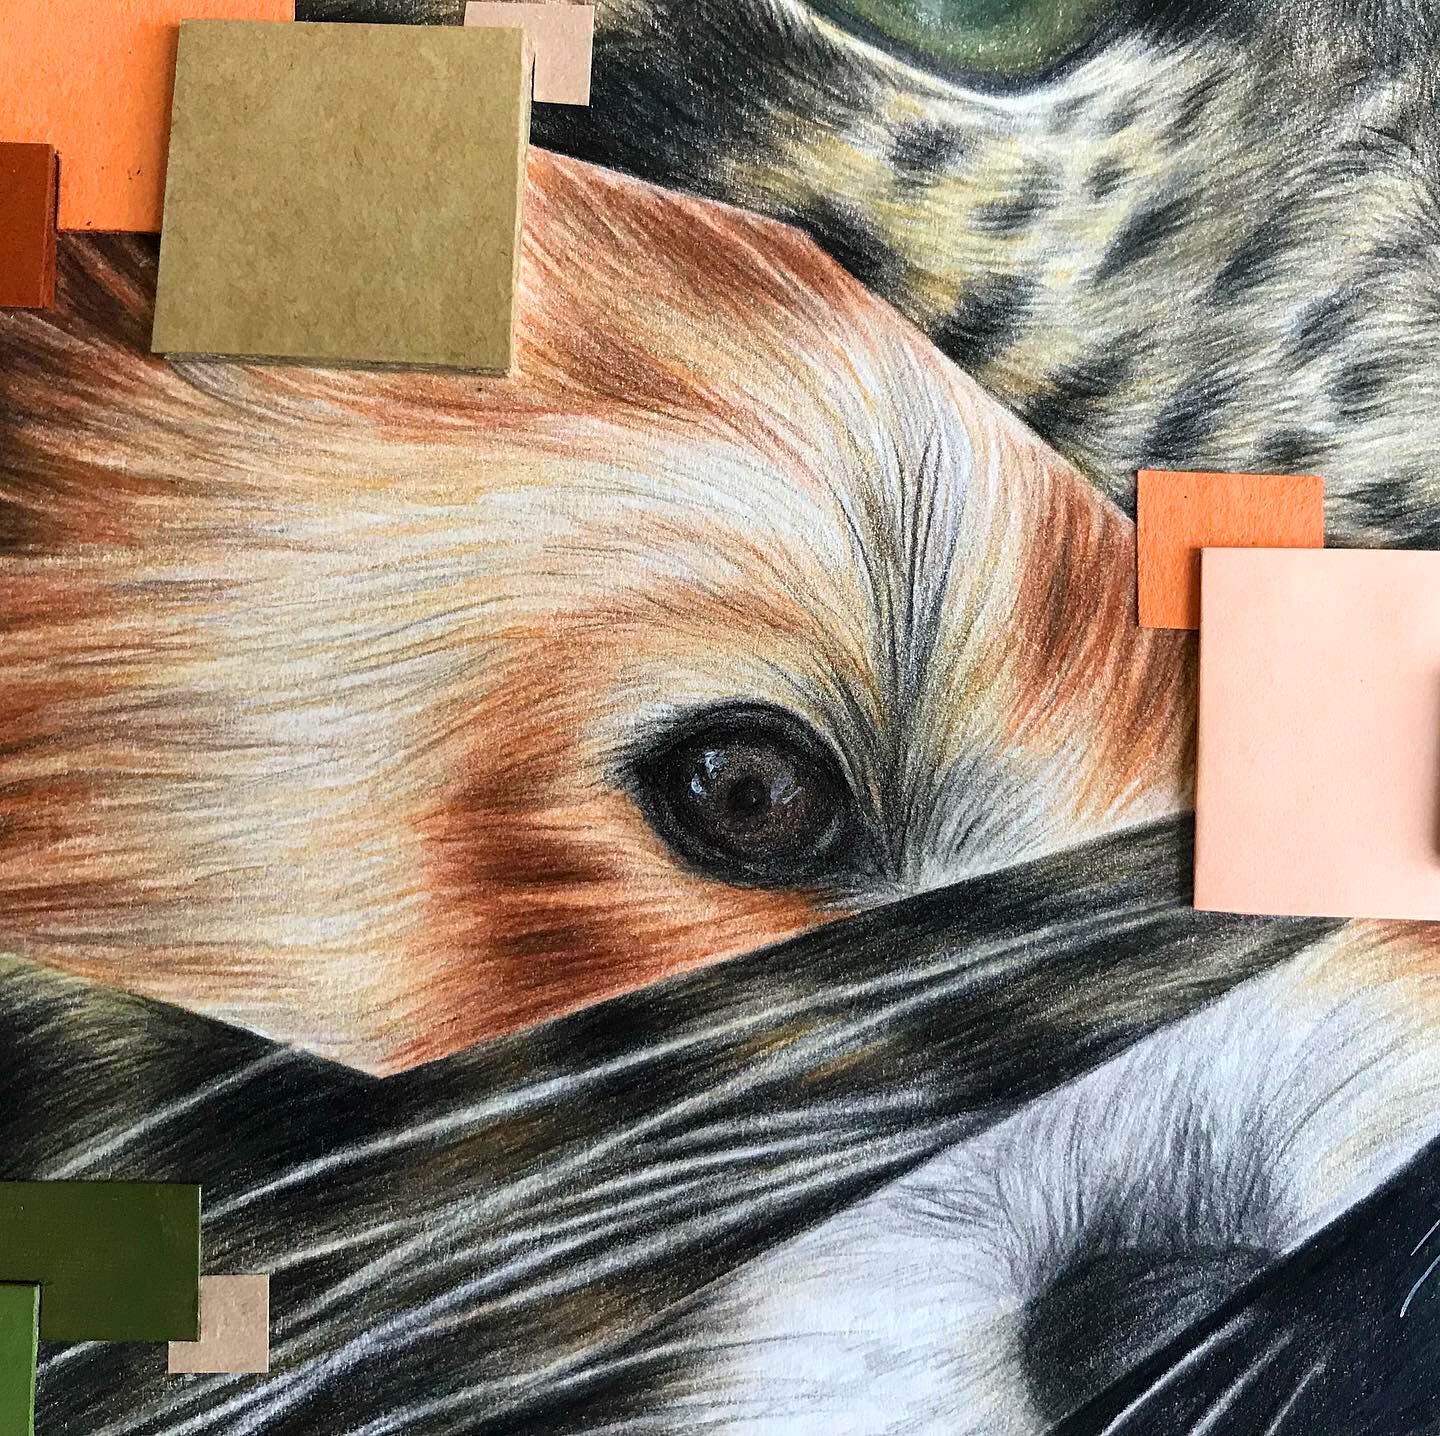 Red panda face details and matching orange pixels